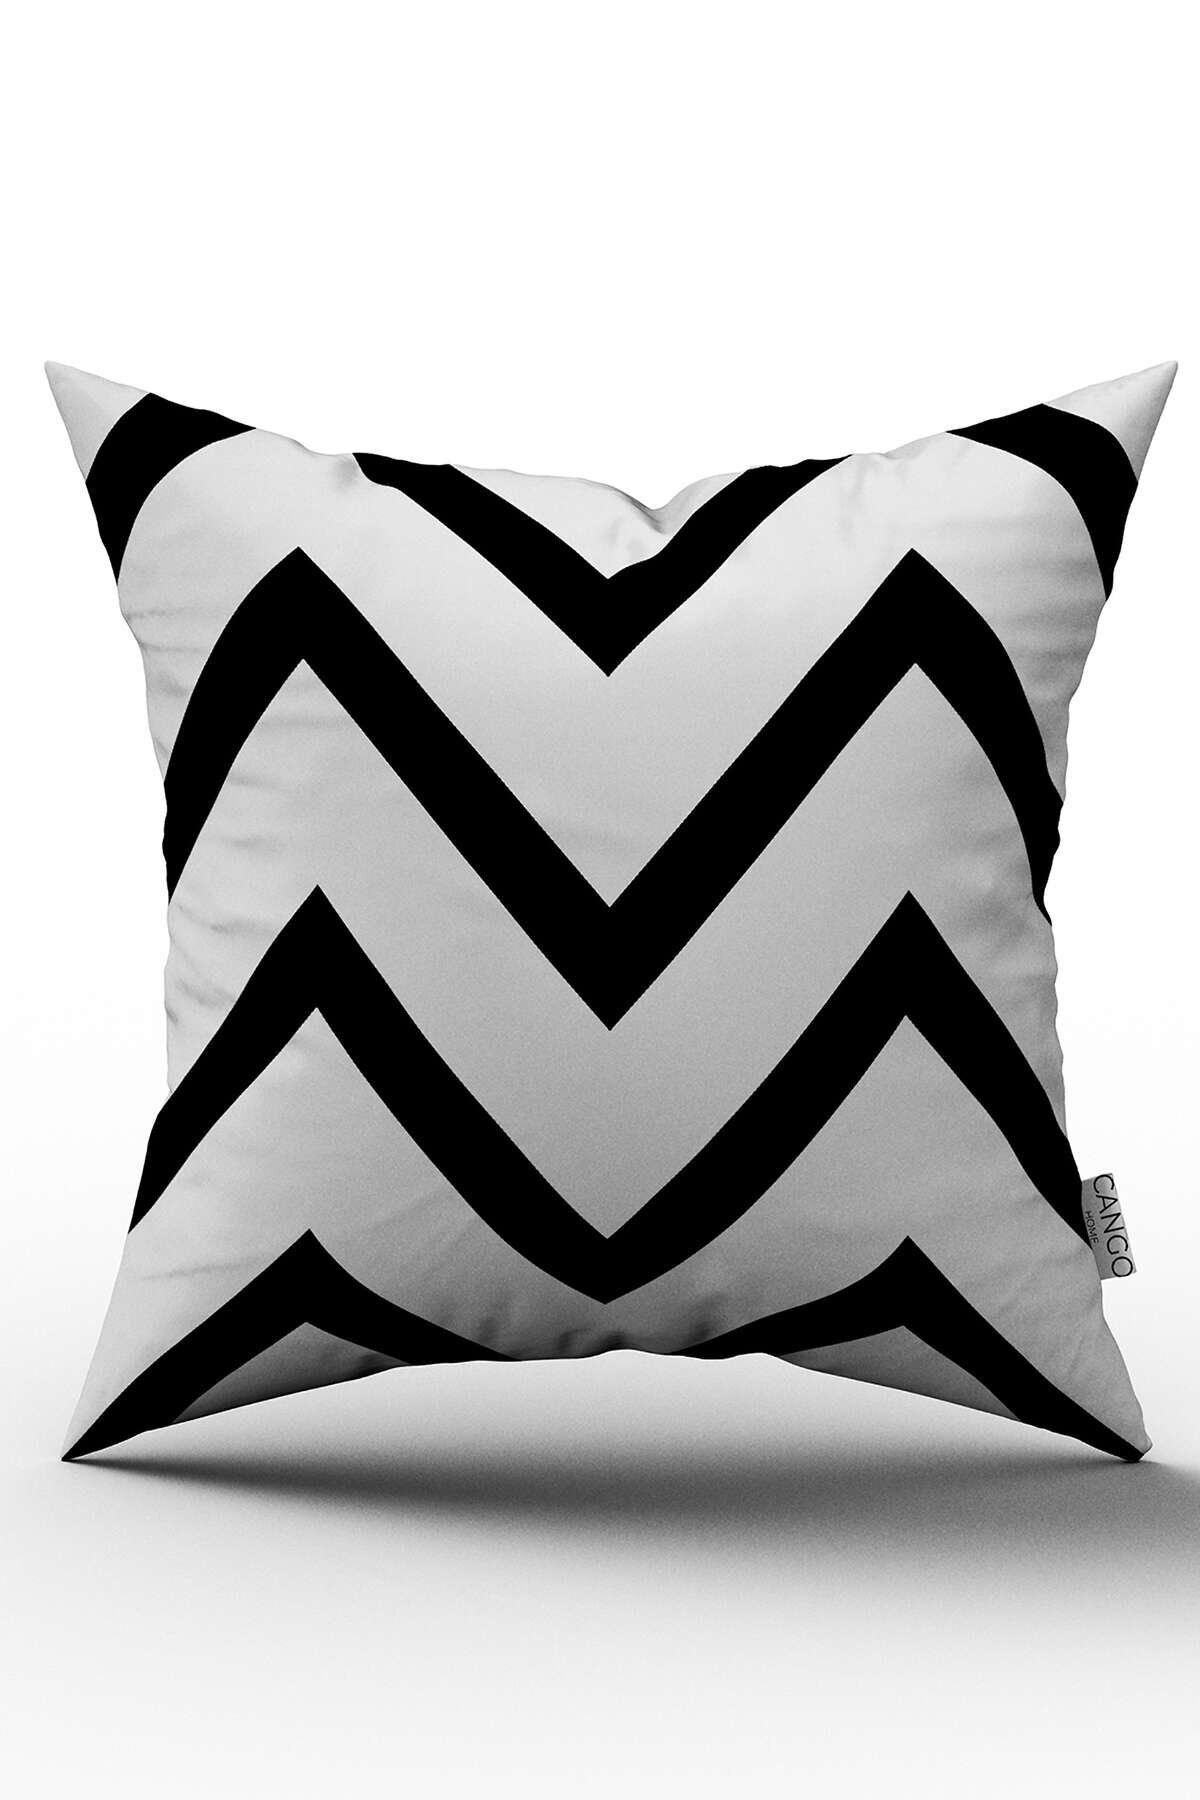 Cango Home Çift Taraflı Beyaz Siyah Dekoraif Zigzag Desenli Dijital Baskılı Kırlent Kılıfı - Otyk561-ct